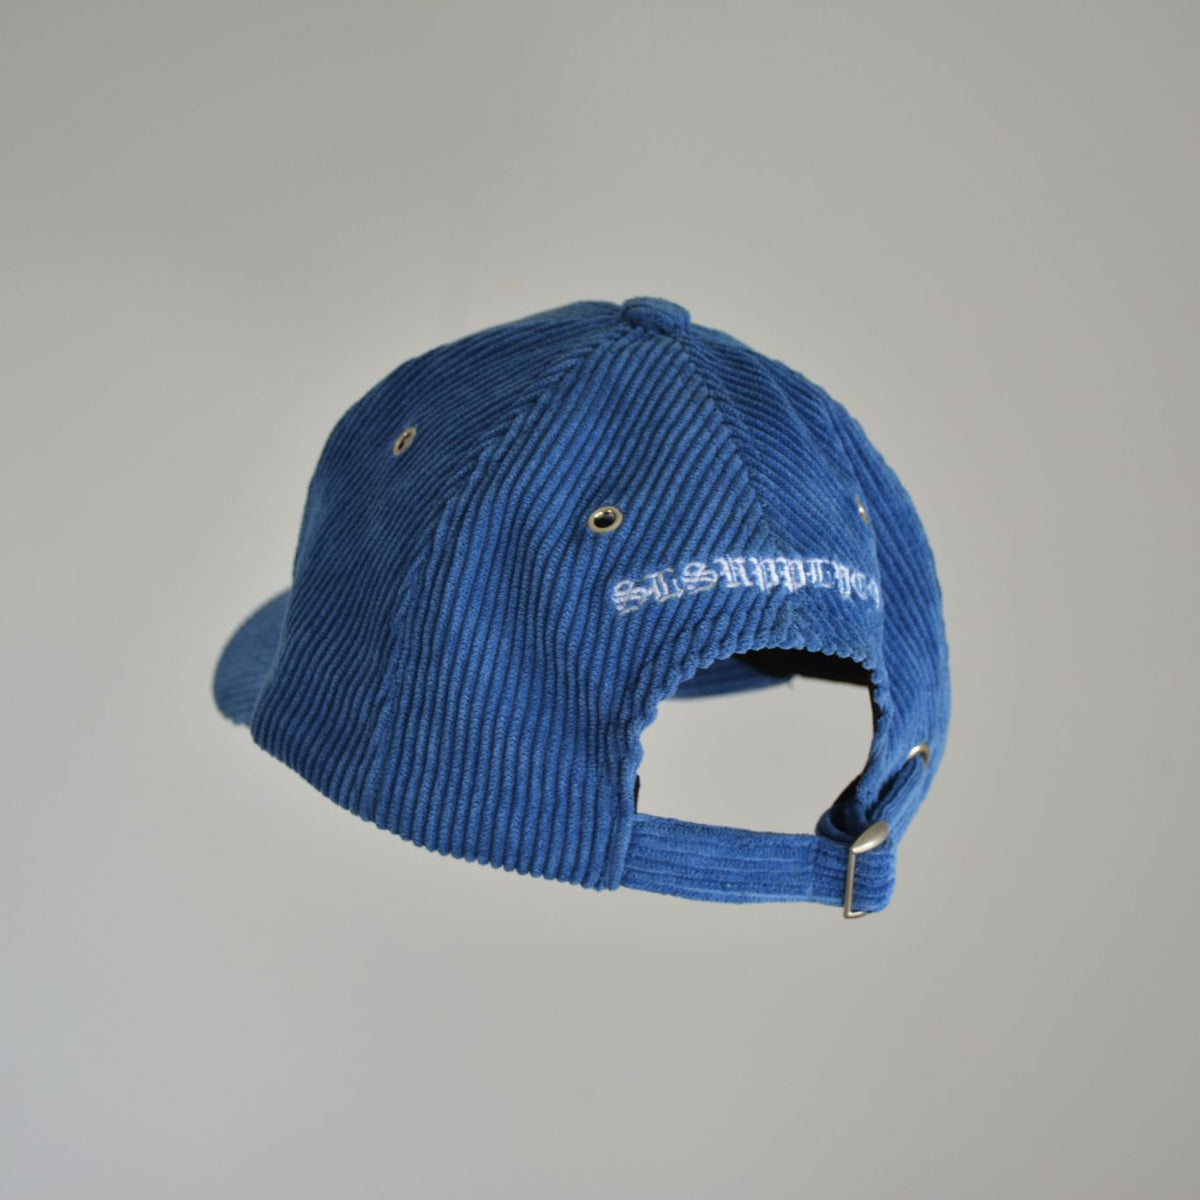 backwards baseball cap